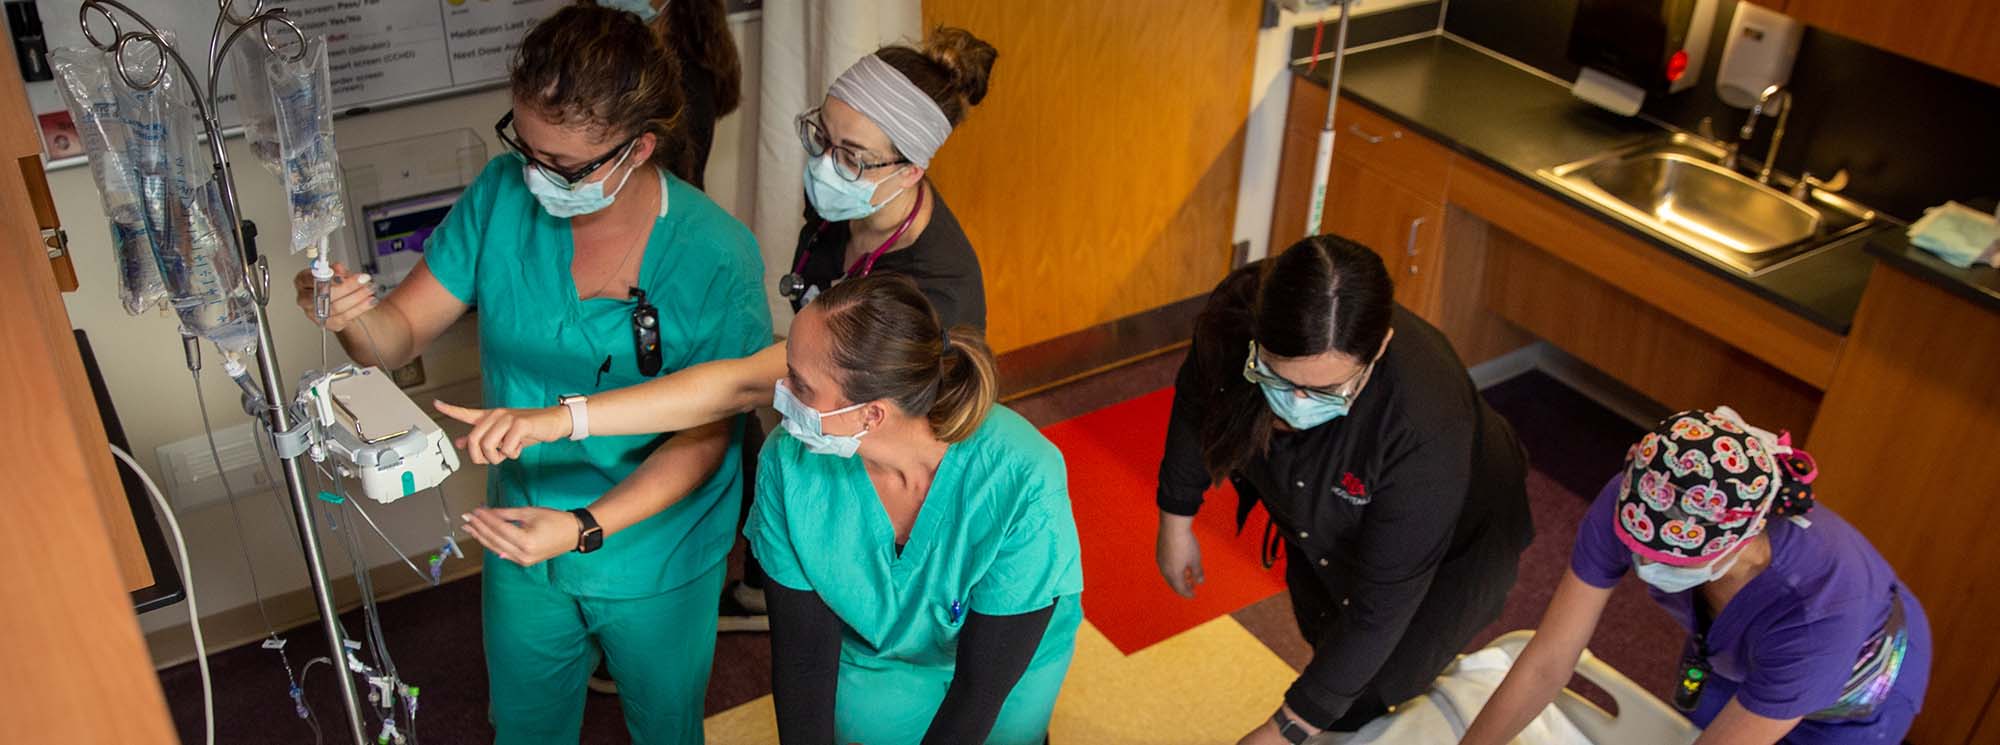 Студенты-медсестры работают вместе над пациентом